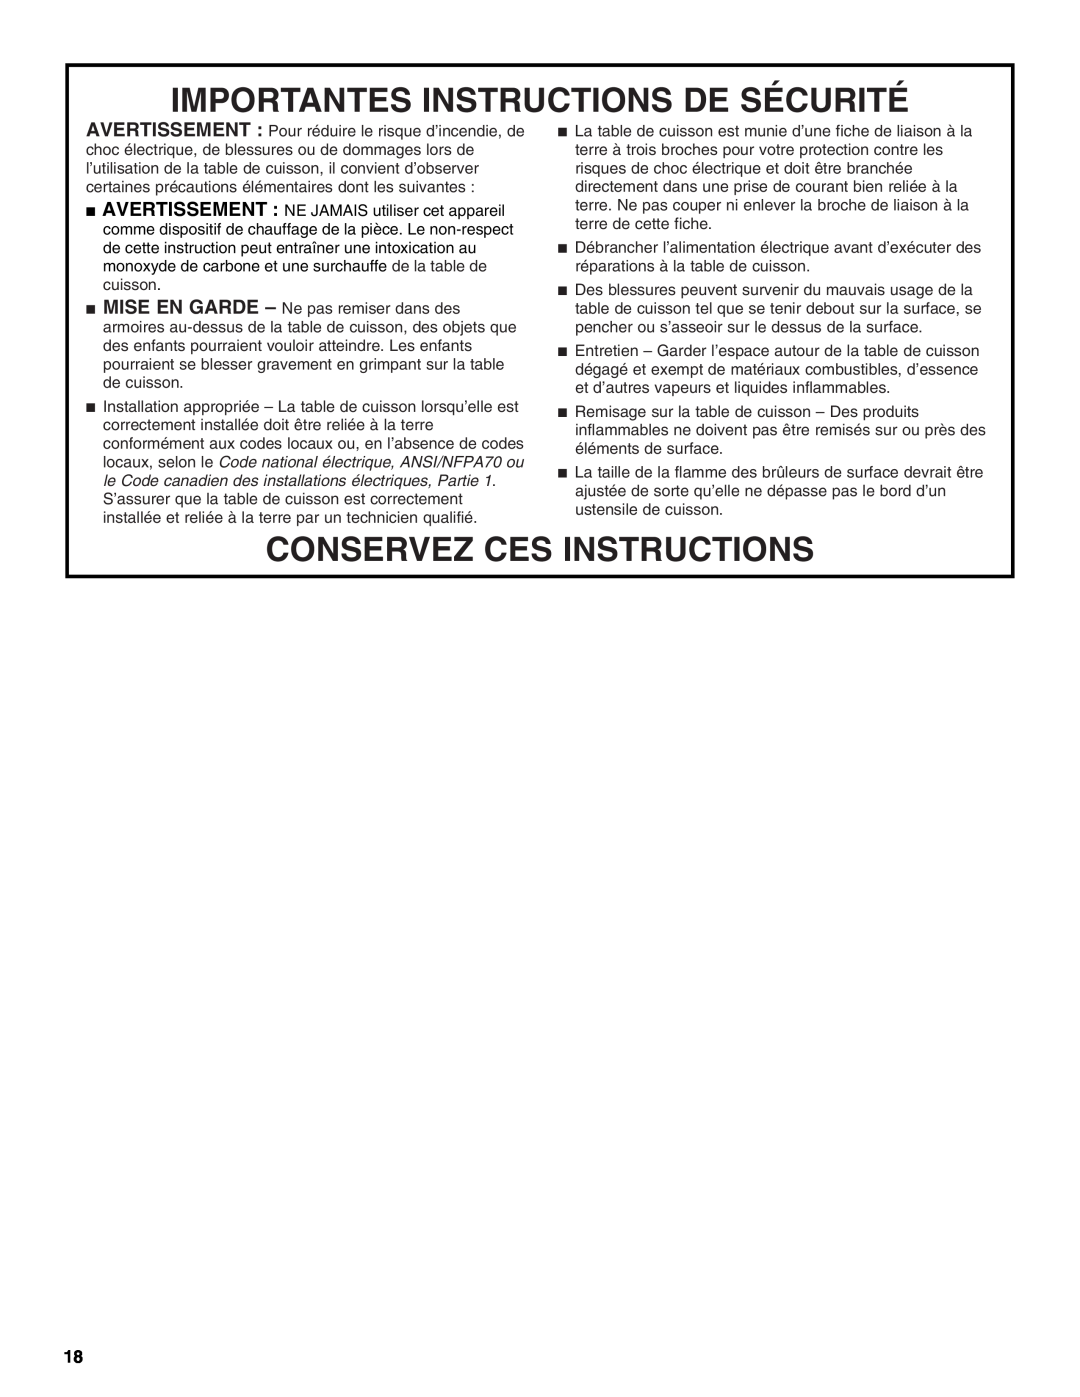 KitchenAid KGCU483VSS manual Importantes Instructions De Sécurité, Conservez Ces Instructions 